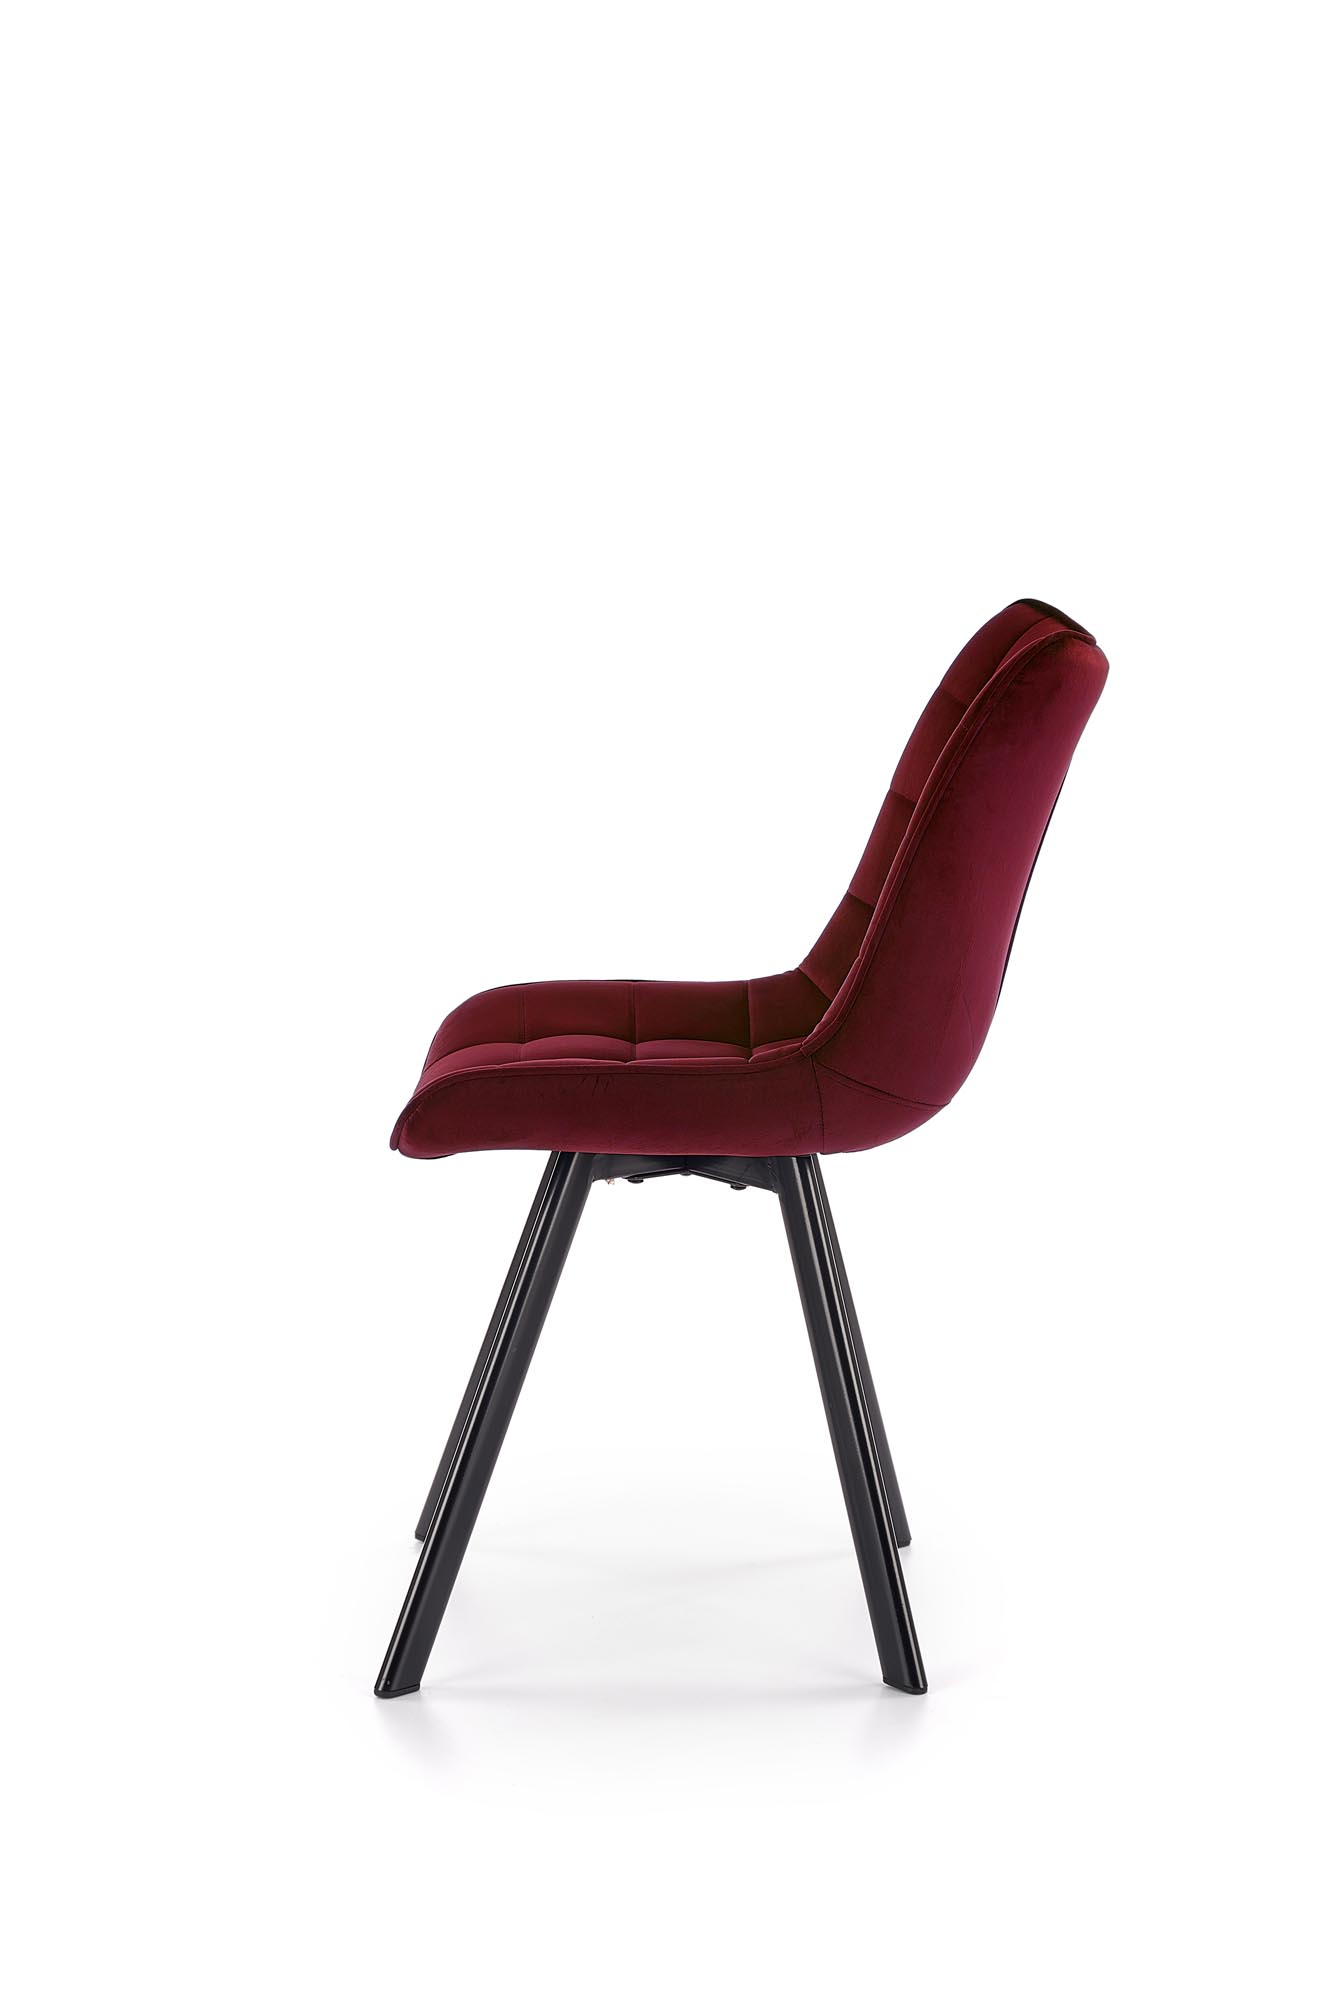 K332 kárpitozott szék - bordó Židle čalouněné k332 - bordová